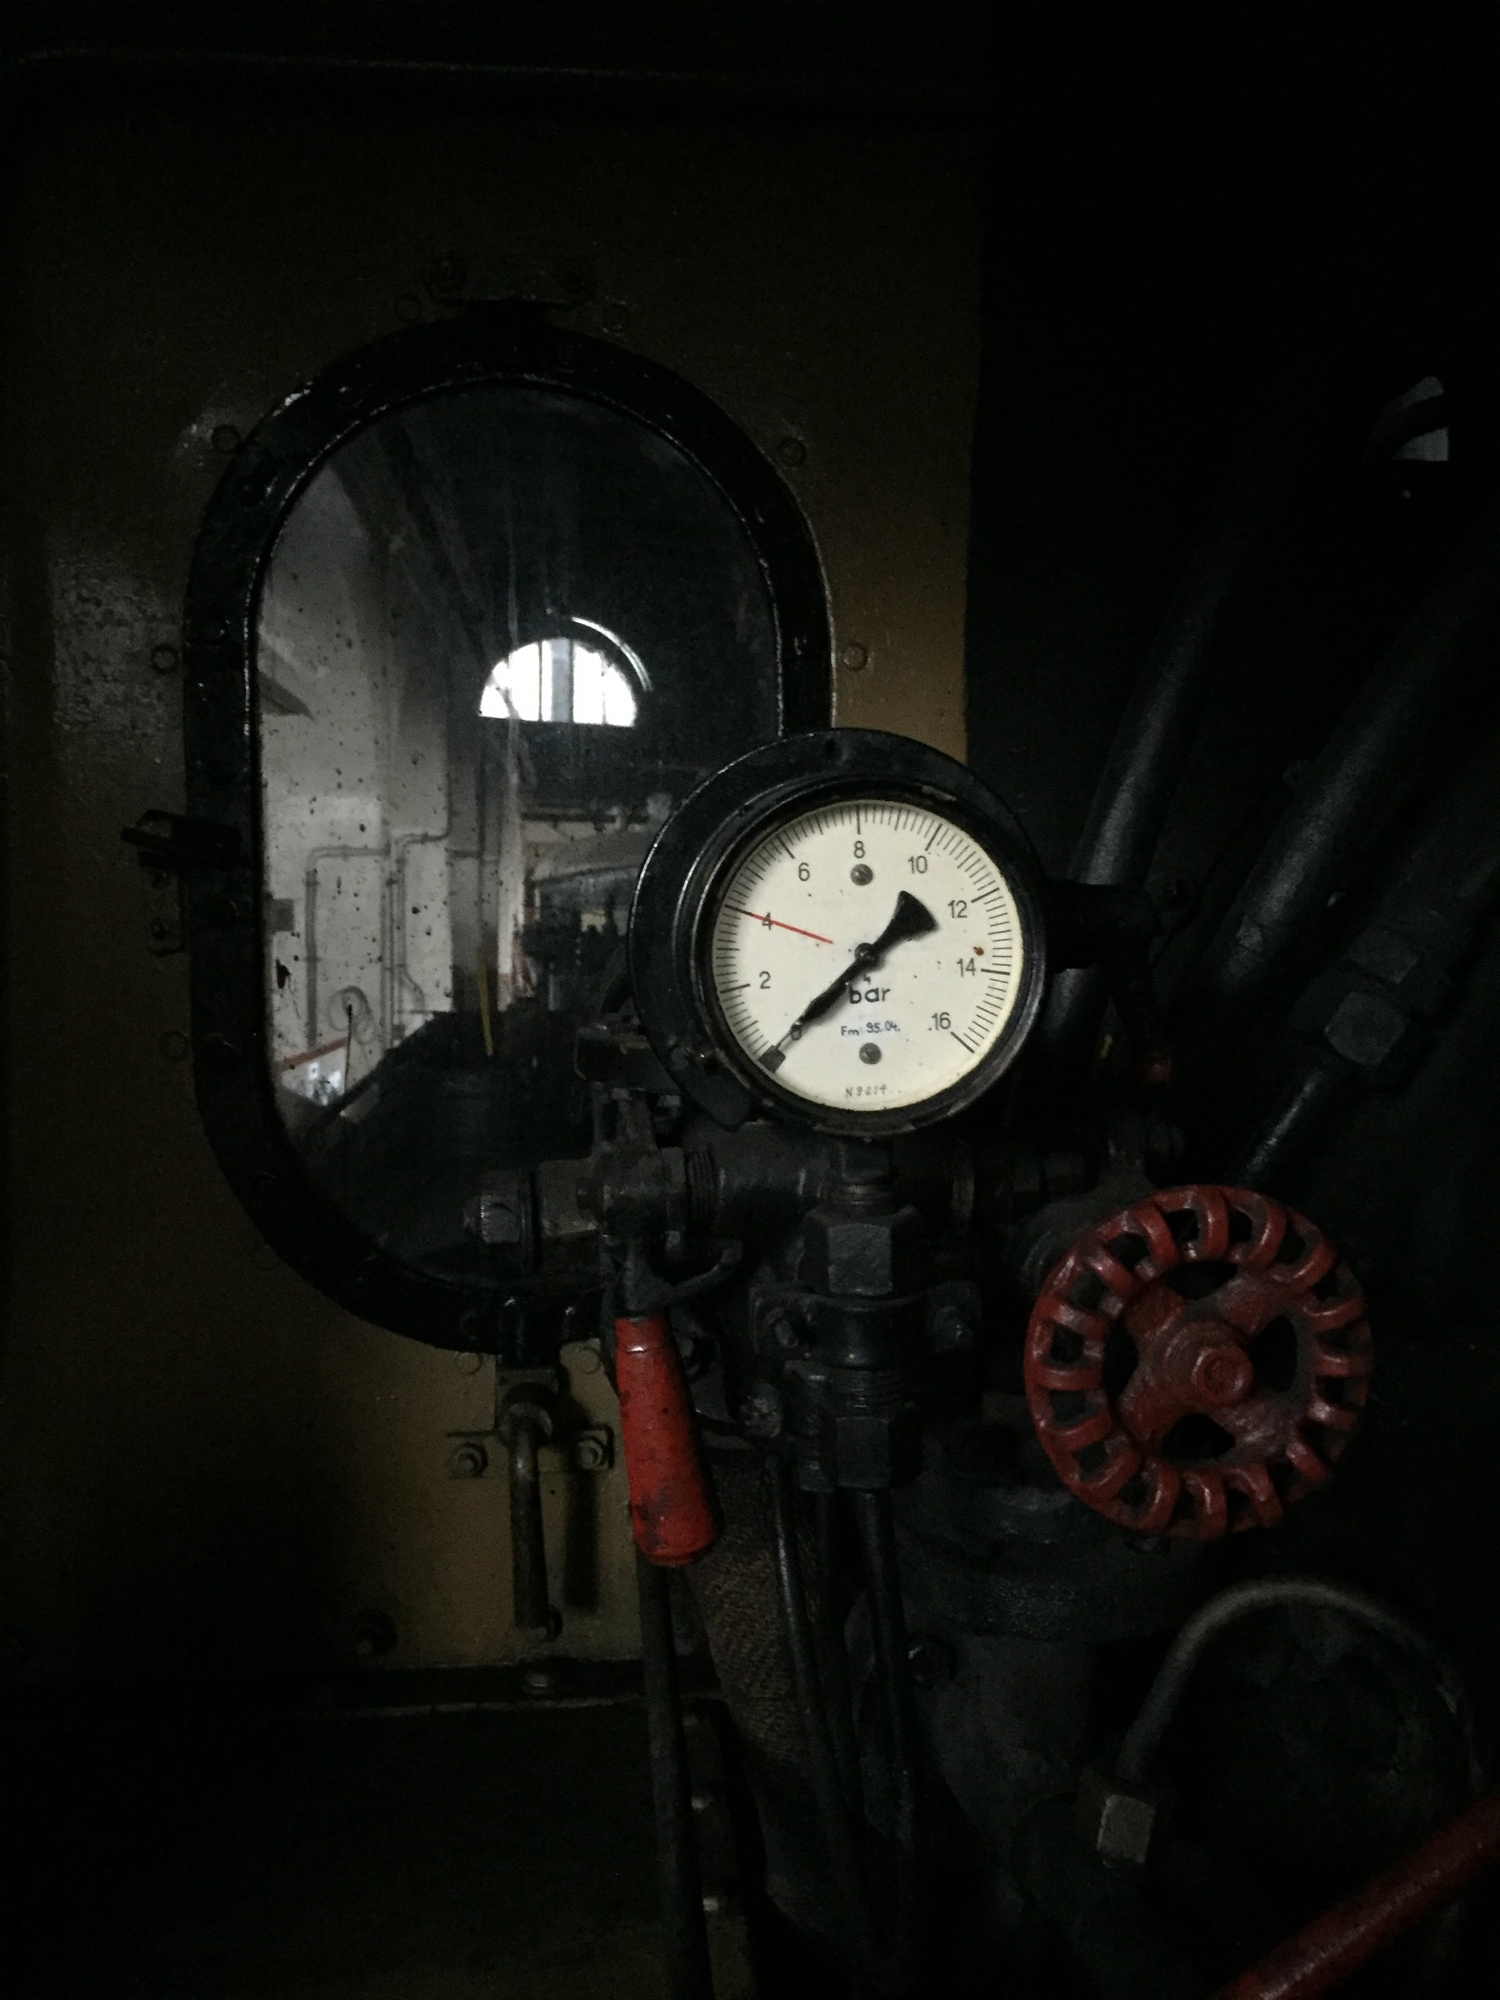 Druckmesser in einer Lokomotive vor einem Fenster, im Hintergrund ein weiteres Fenster, das Tageslicht in die Halle lässt